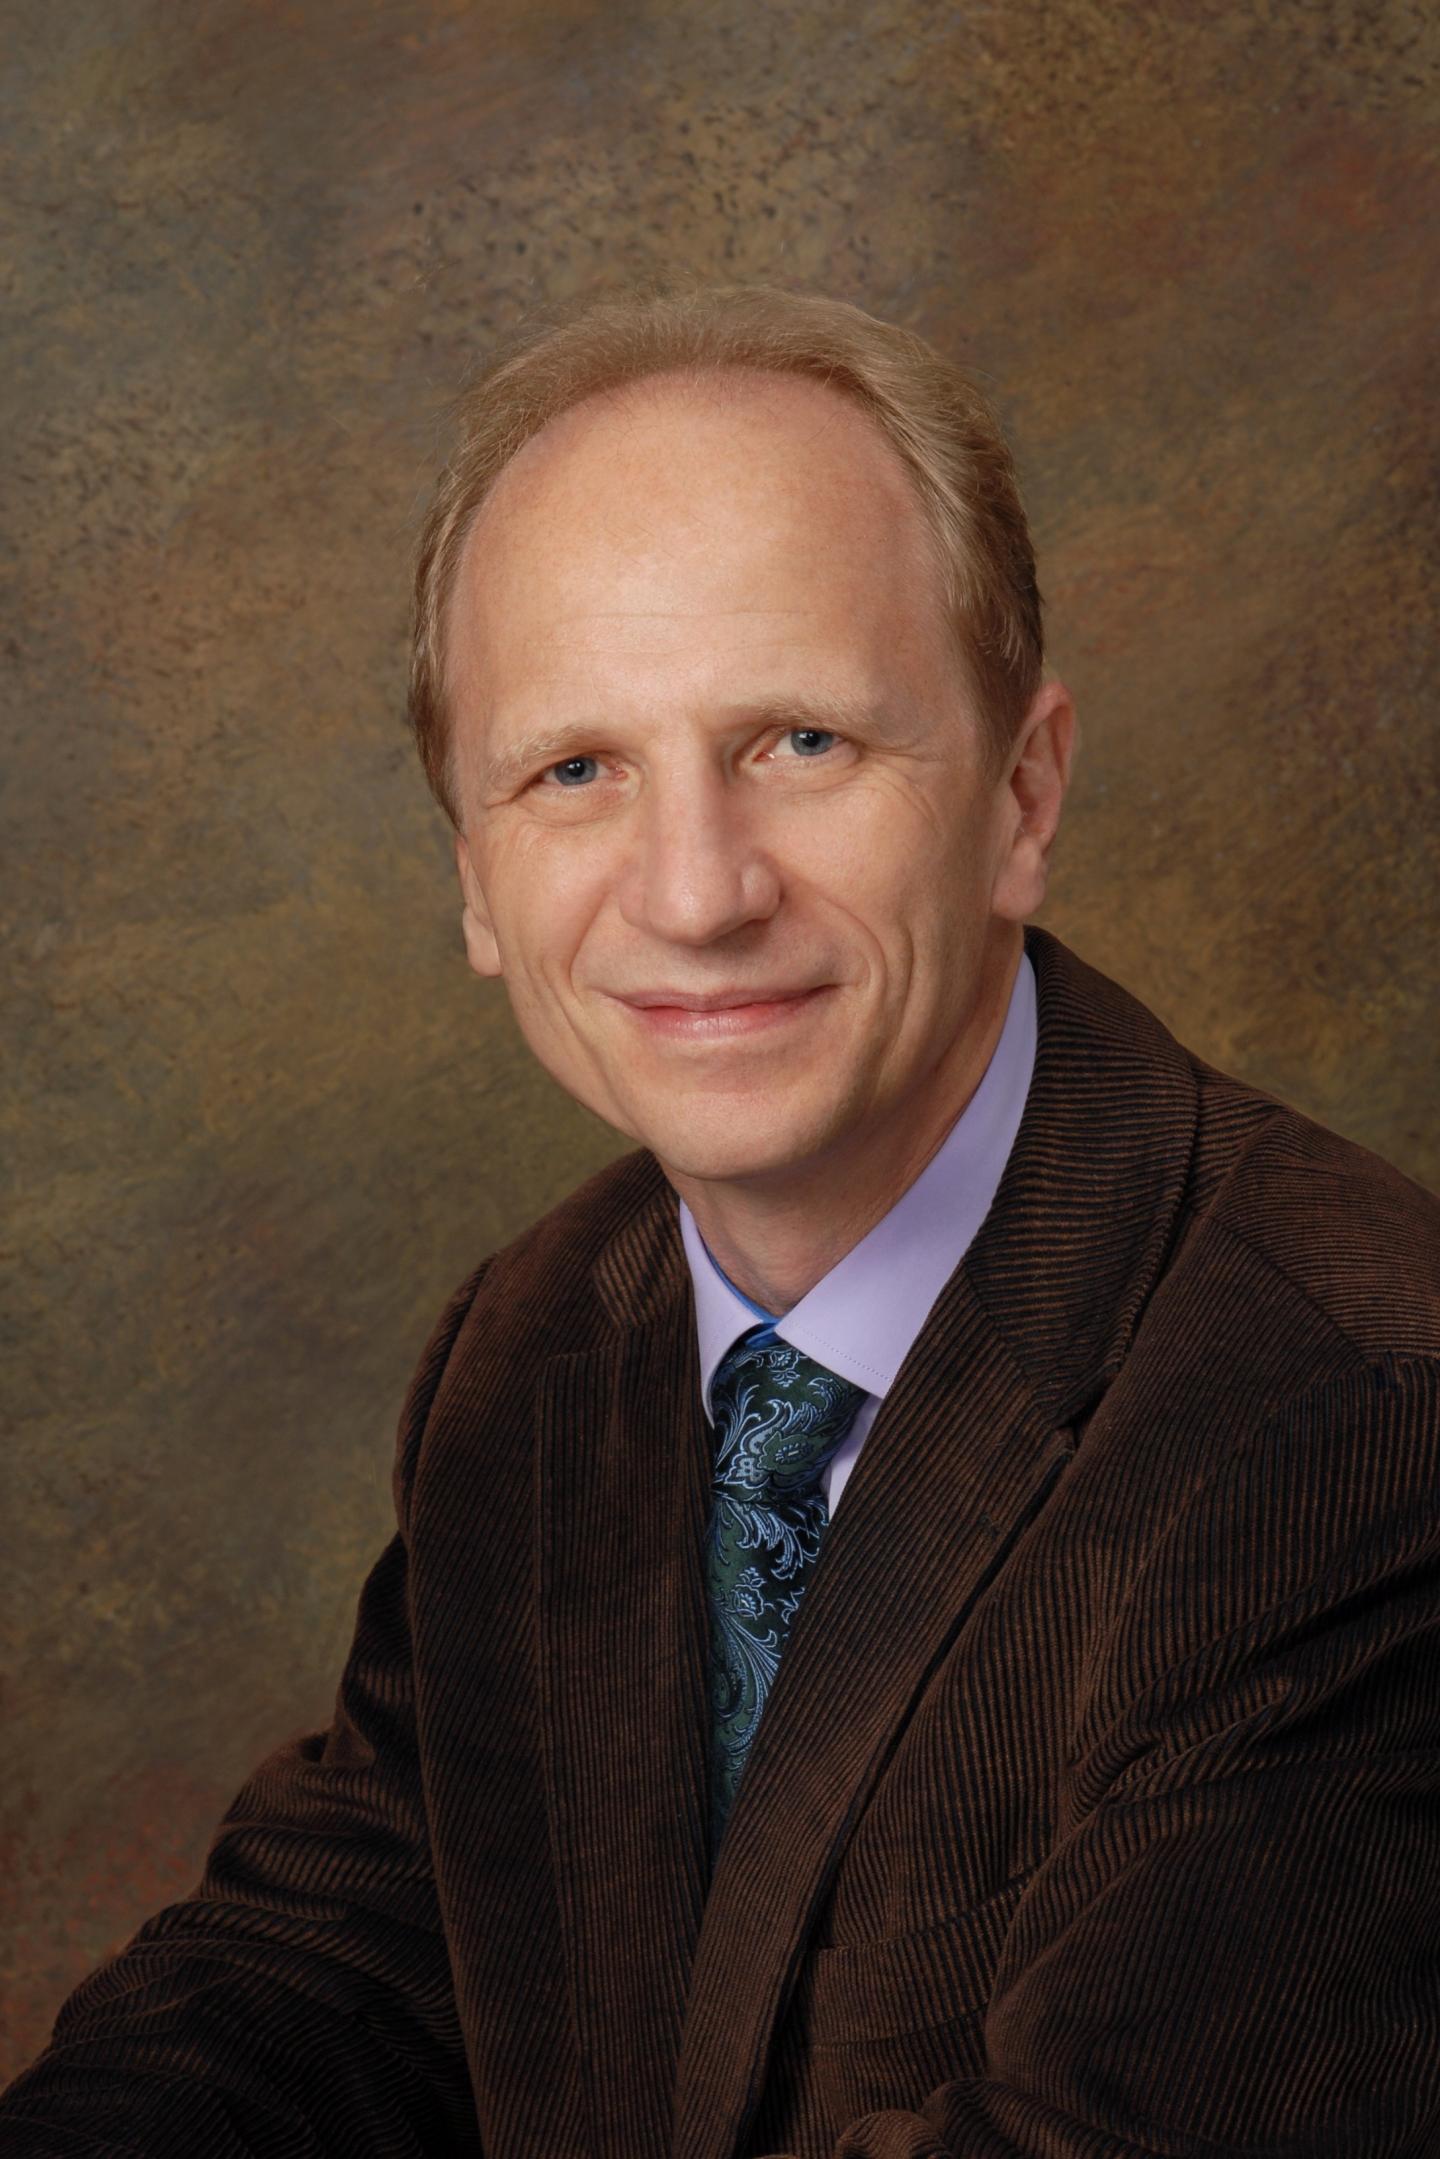 Hans-Peter Kohler, University of Pennsylvania